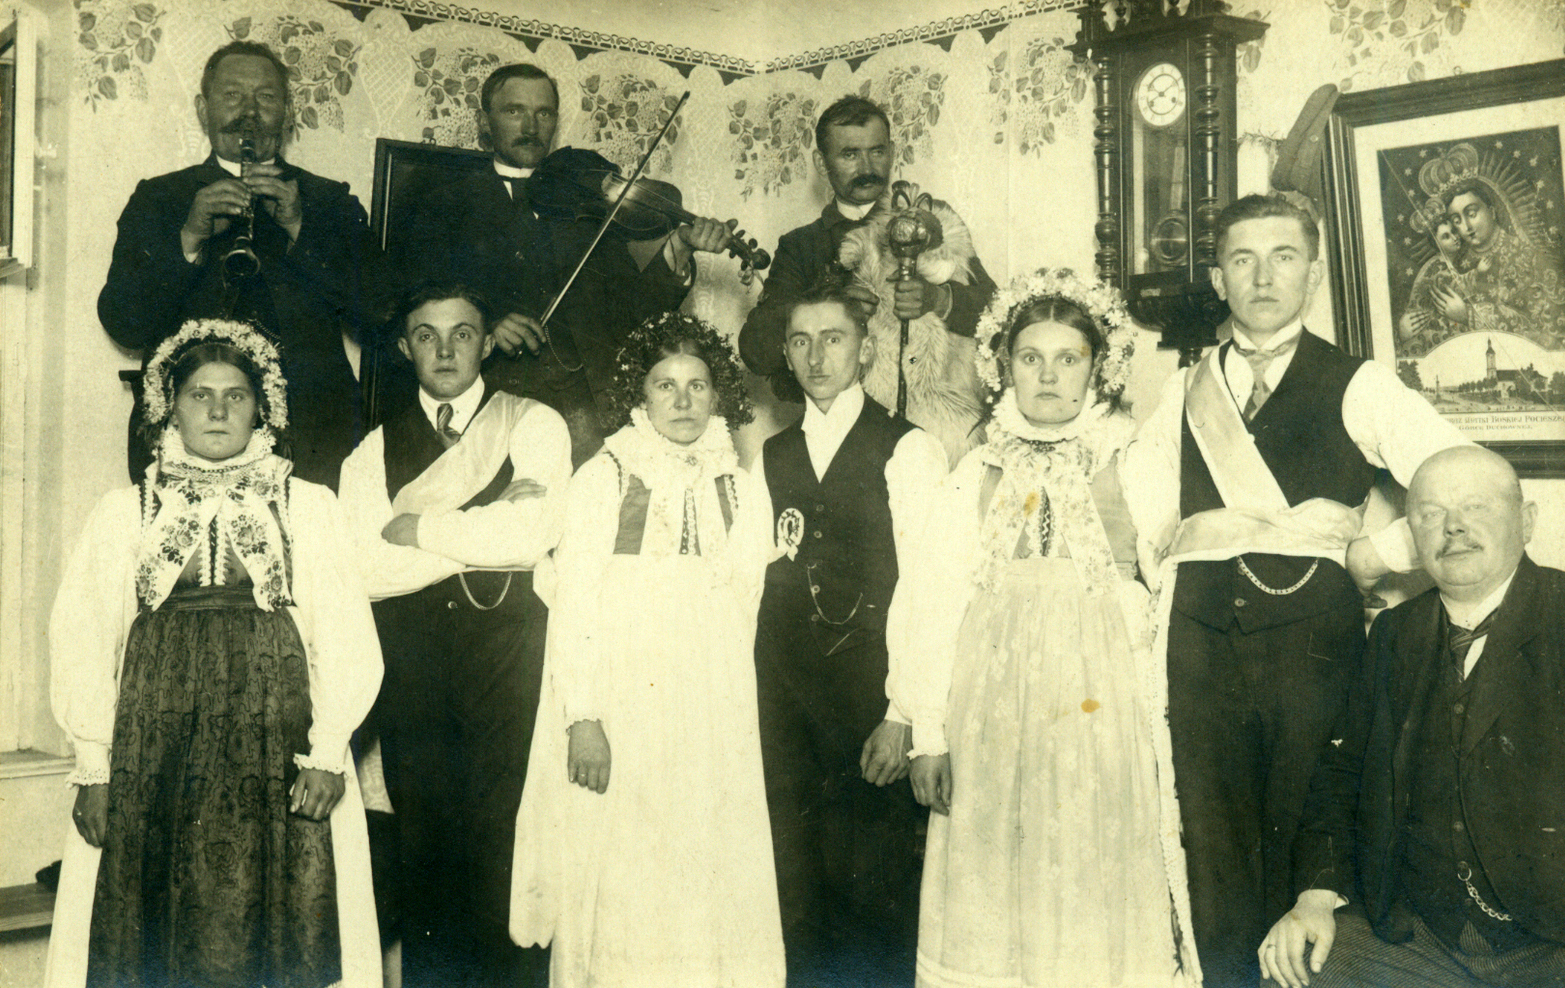 Drużbowie, ok. 1910 r., ze zbiorów prywatnych